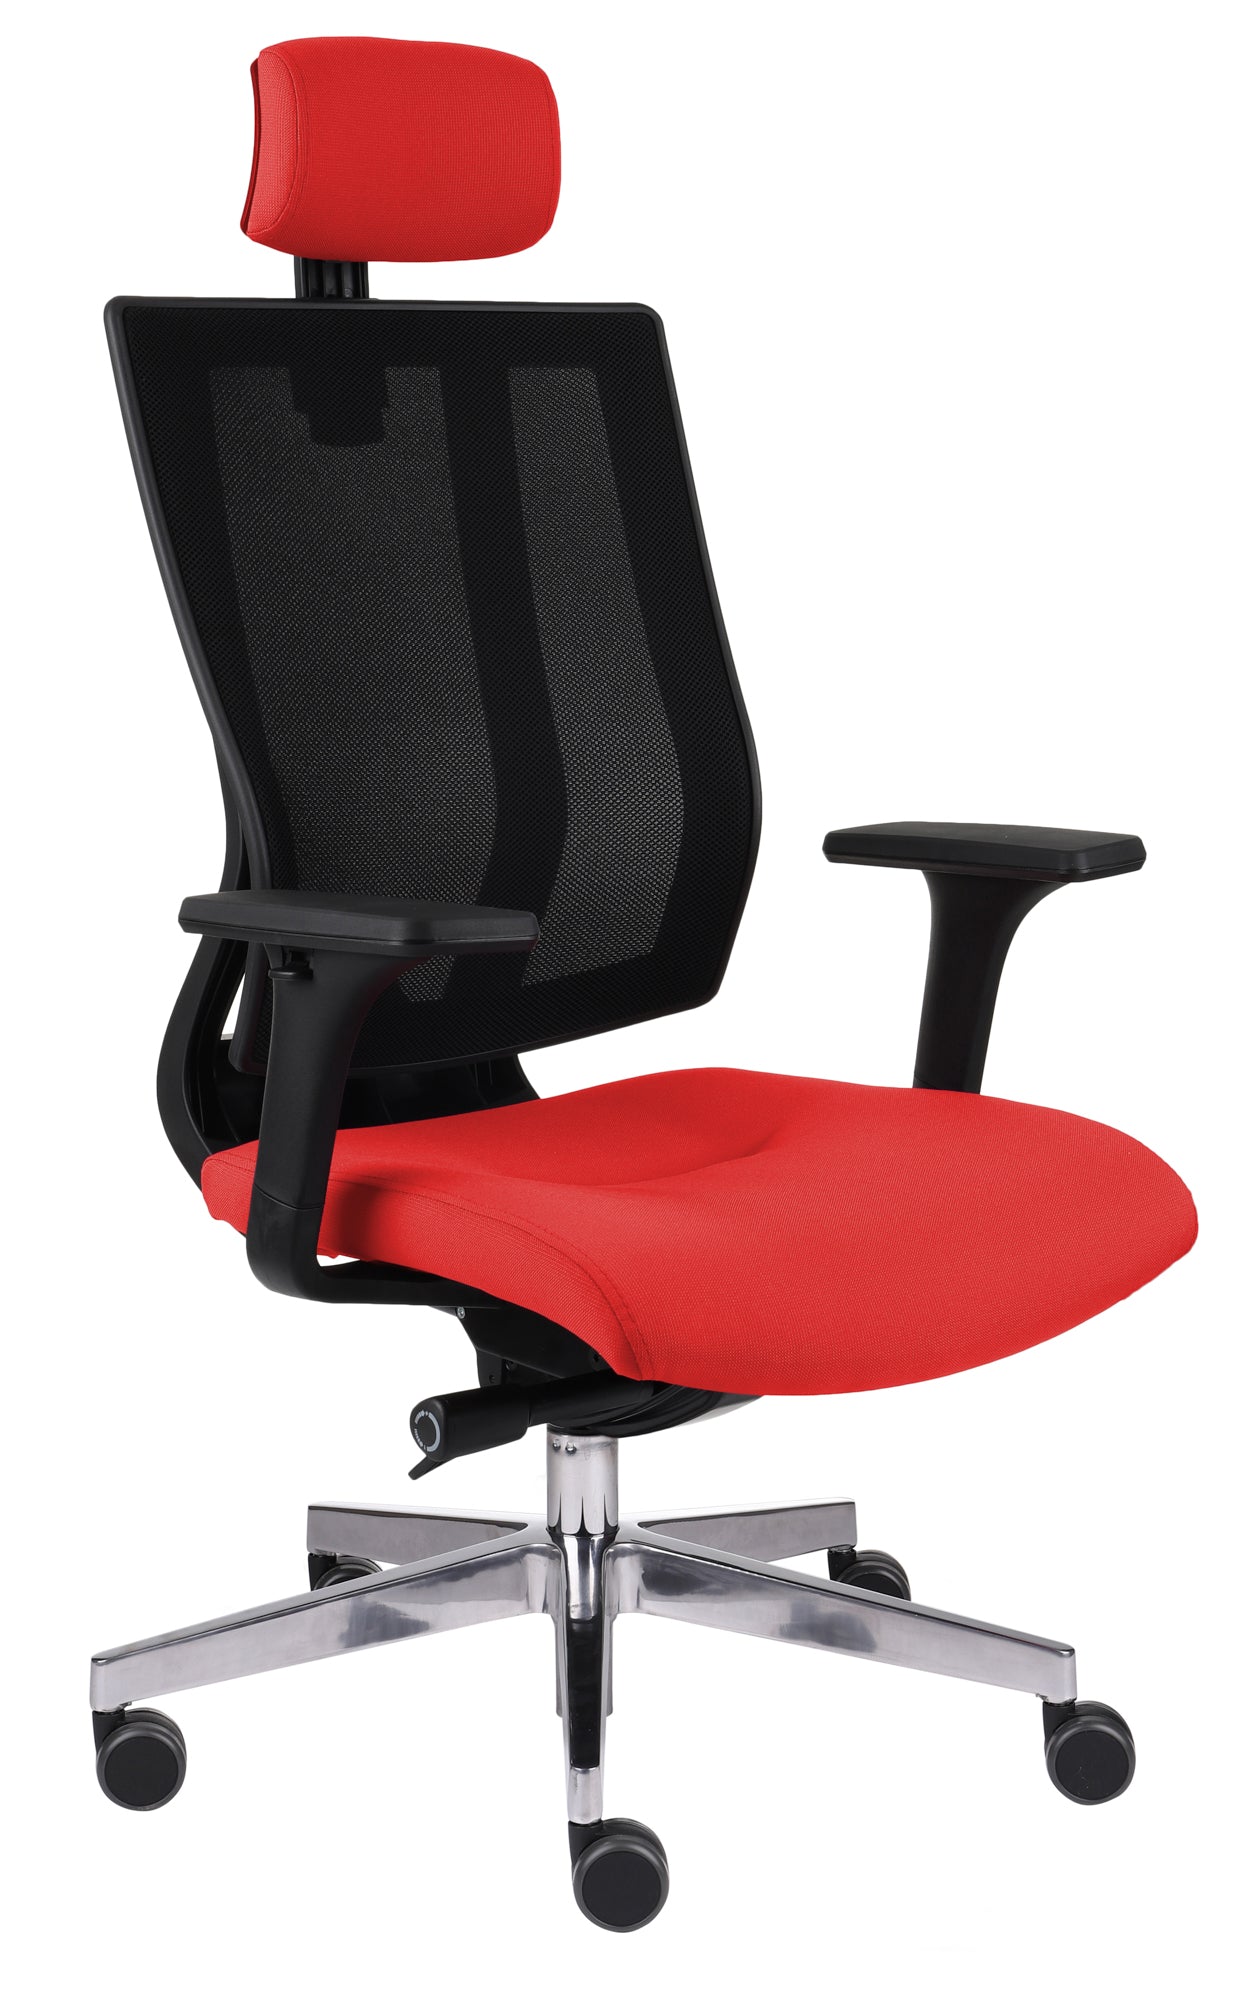 Biroja krēsls MaxPro BS HD Chrome Note - Ergostock.lv